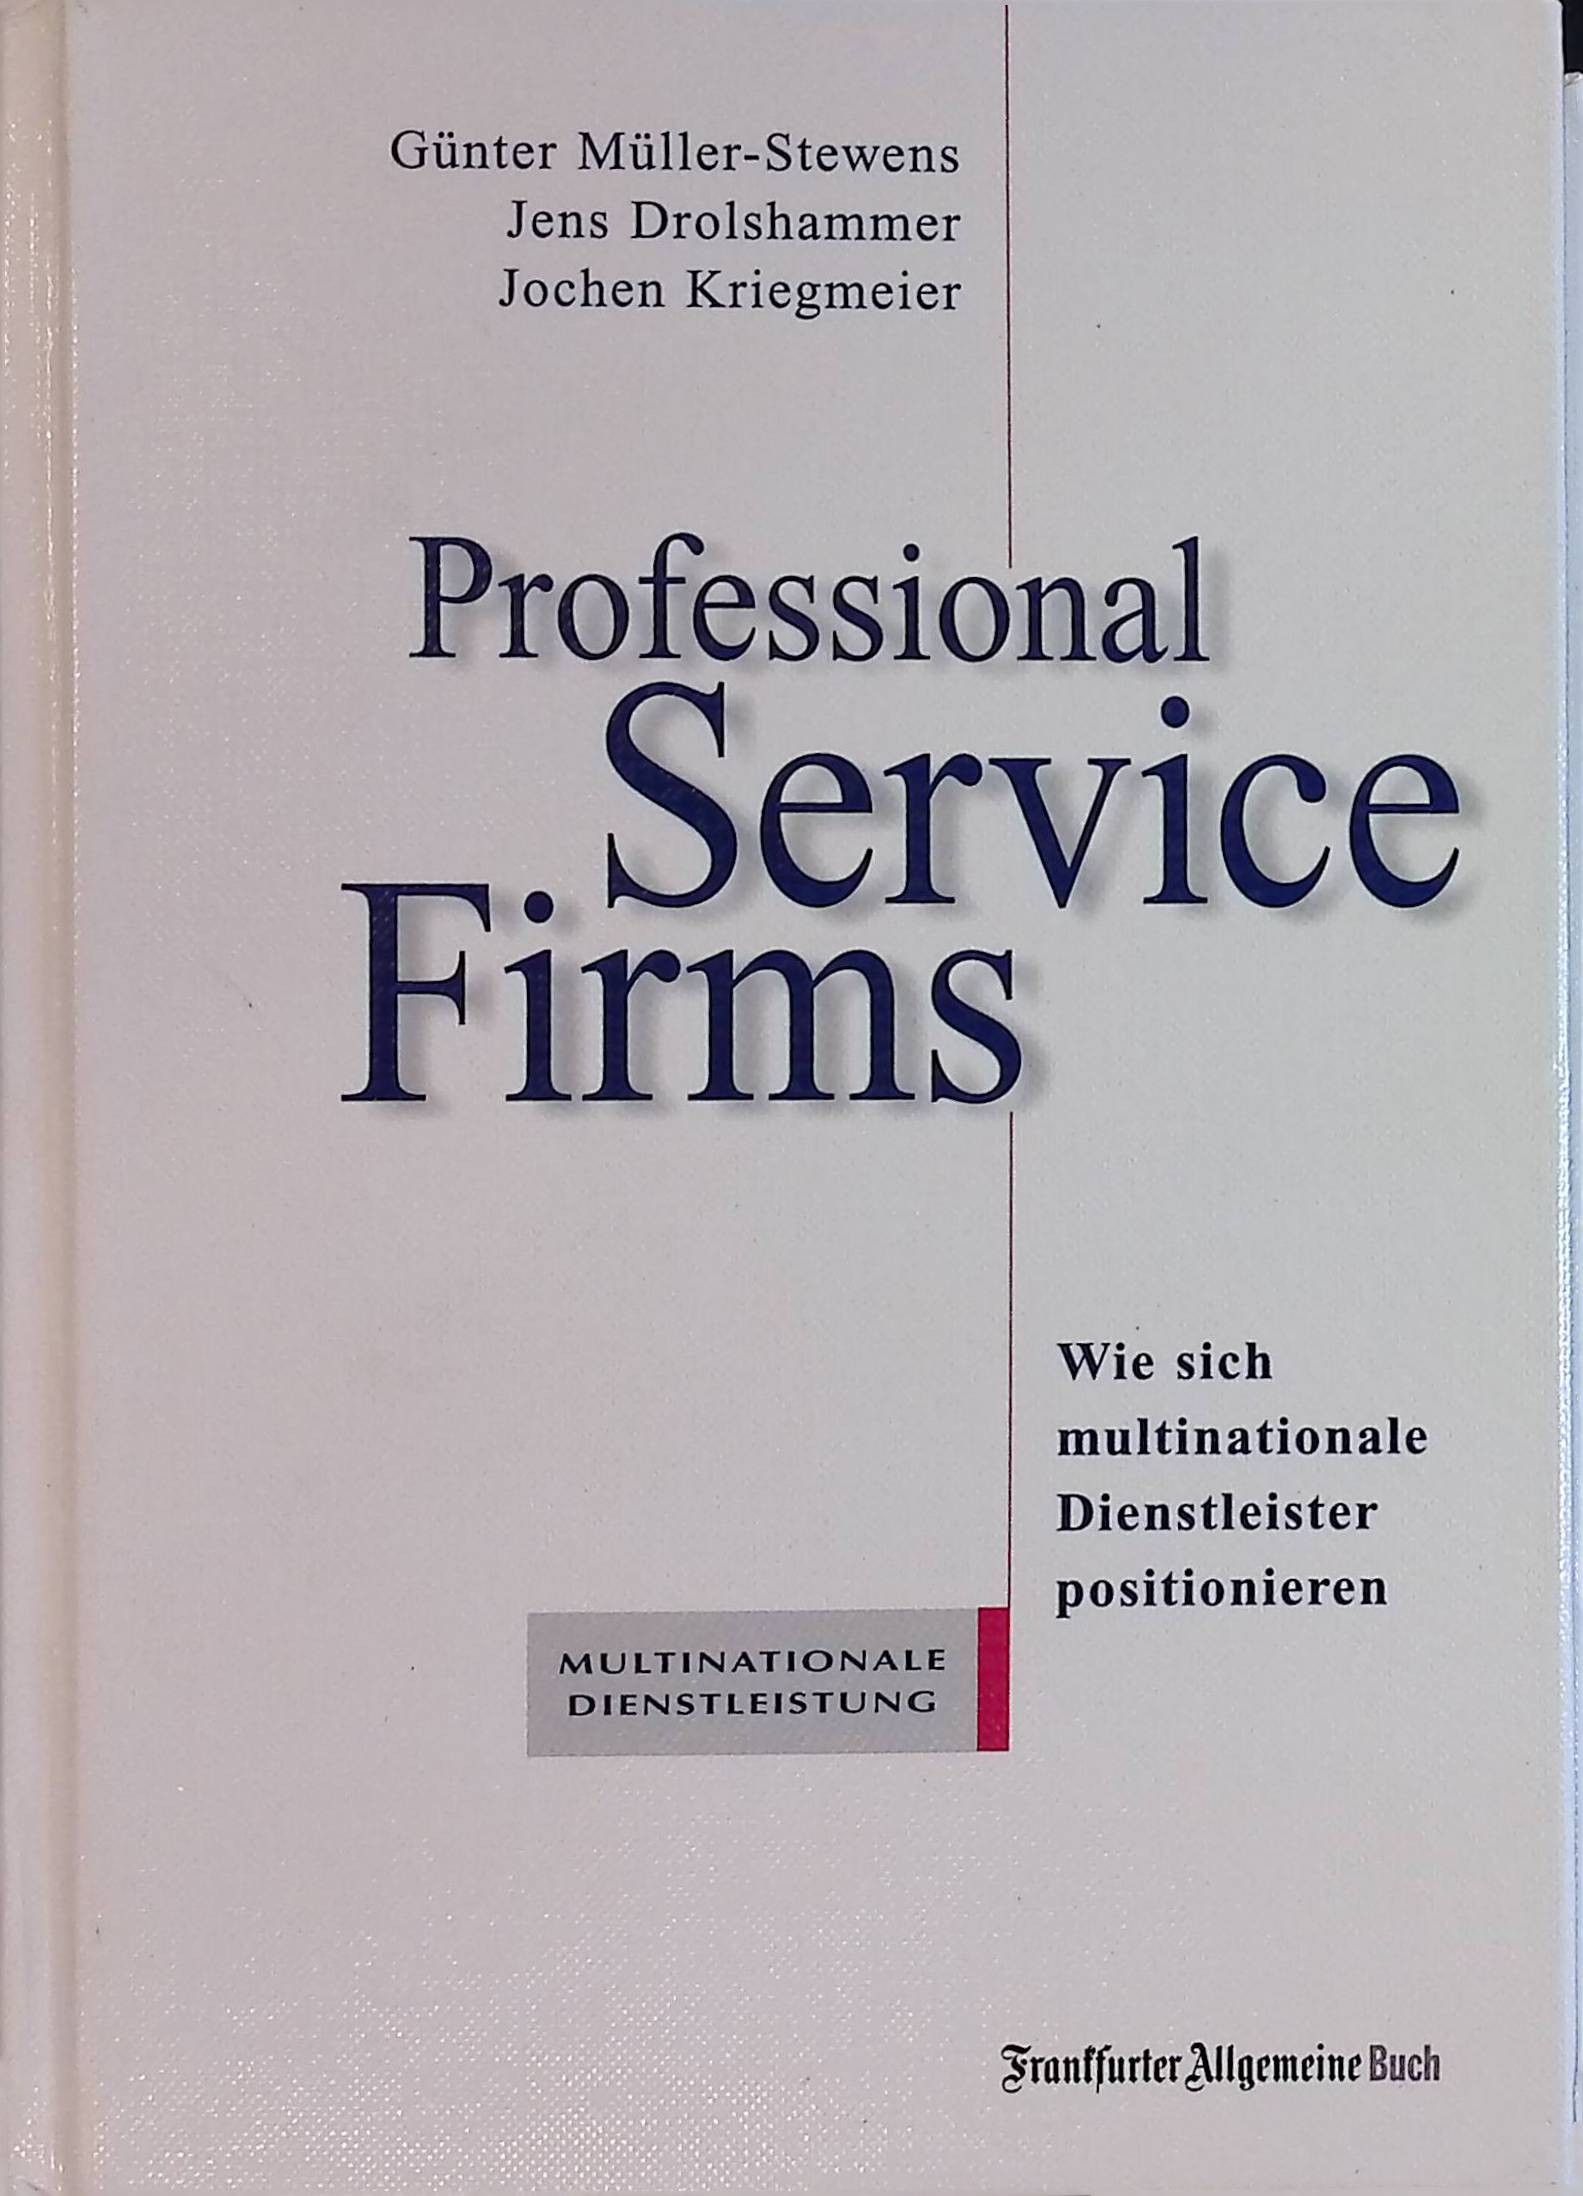 Professional Service Firms. Wie sich multinationale Dienstleister positionieren - Müller-Stewens, Günter, Jens Drolshammer and Jochen Kriegmeier